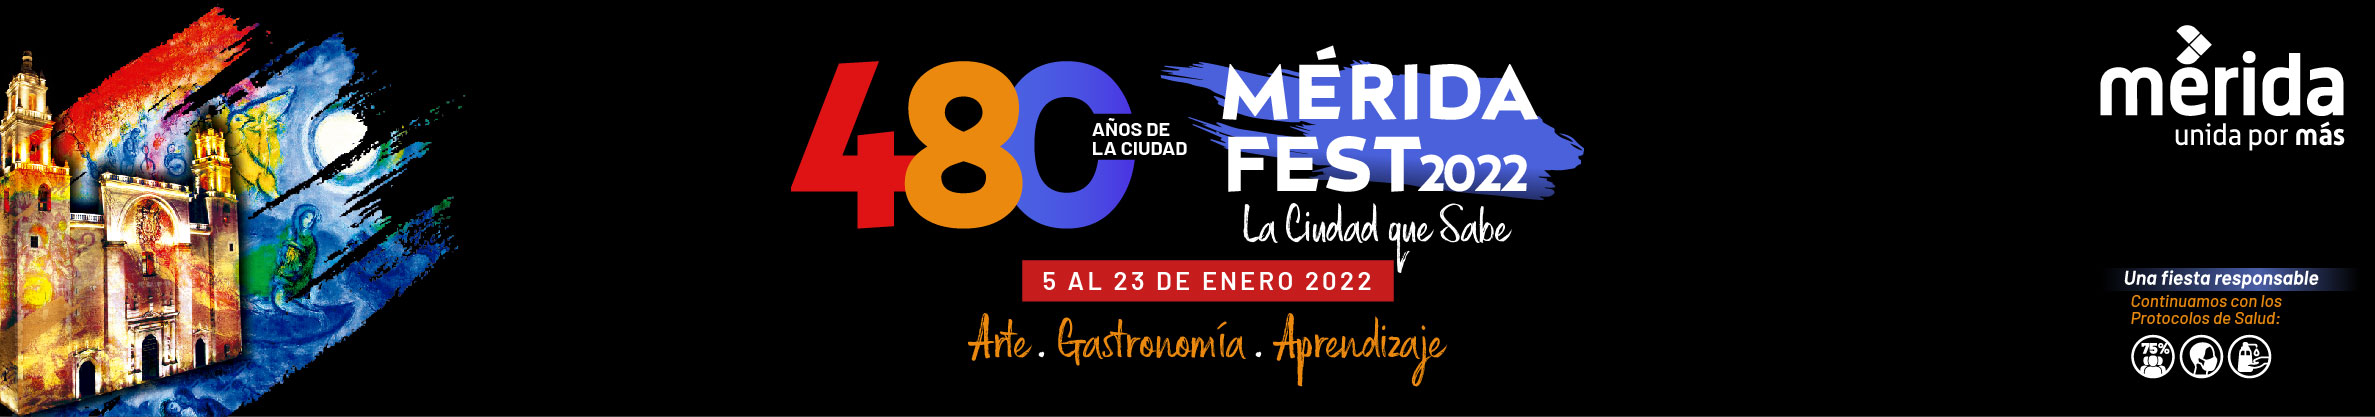 Mérida Fest 2022